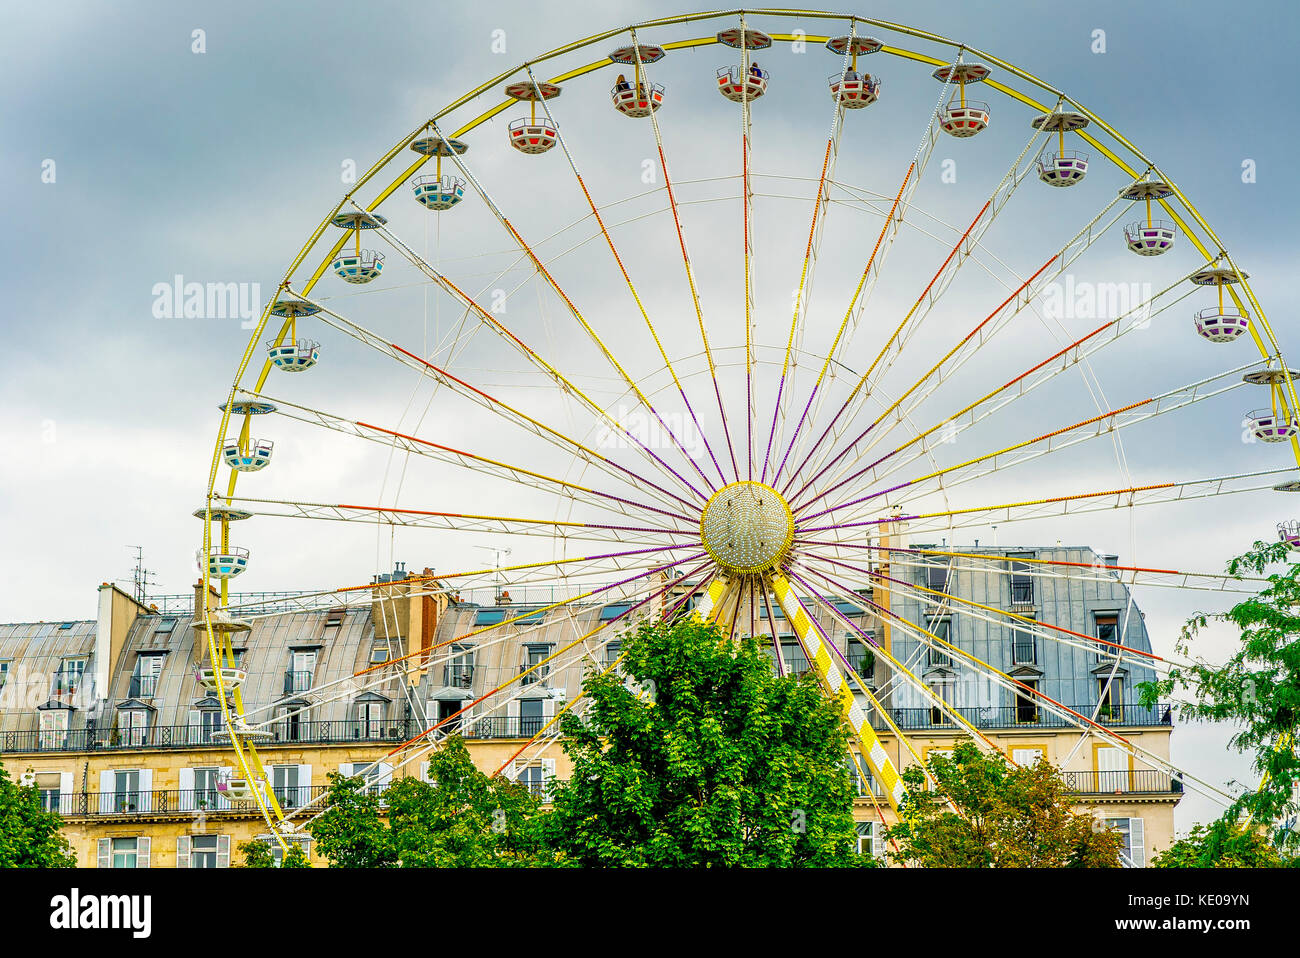 Fete de Tuileries im Tuileries Garten an einem bewölkten Tag in Paris, Frankreich Stockfoto